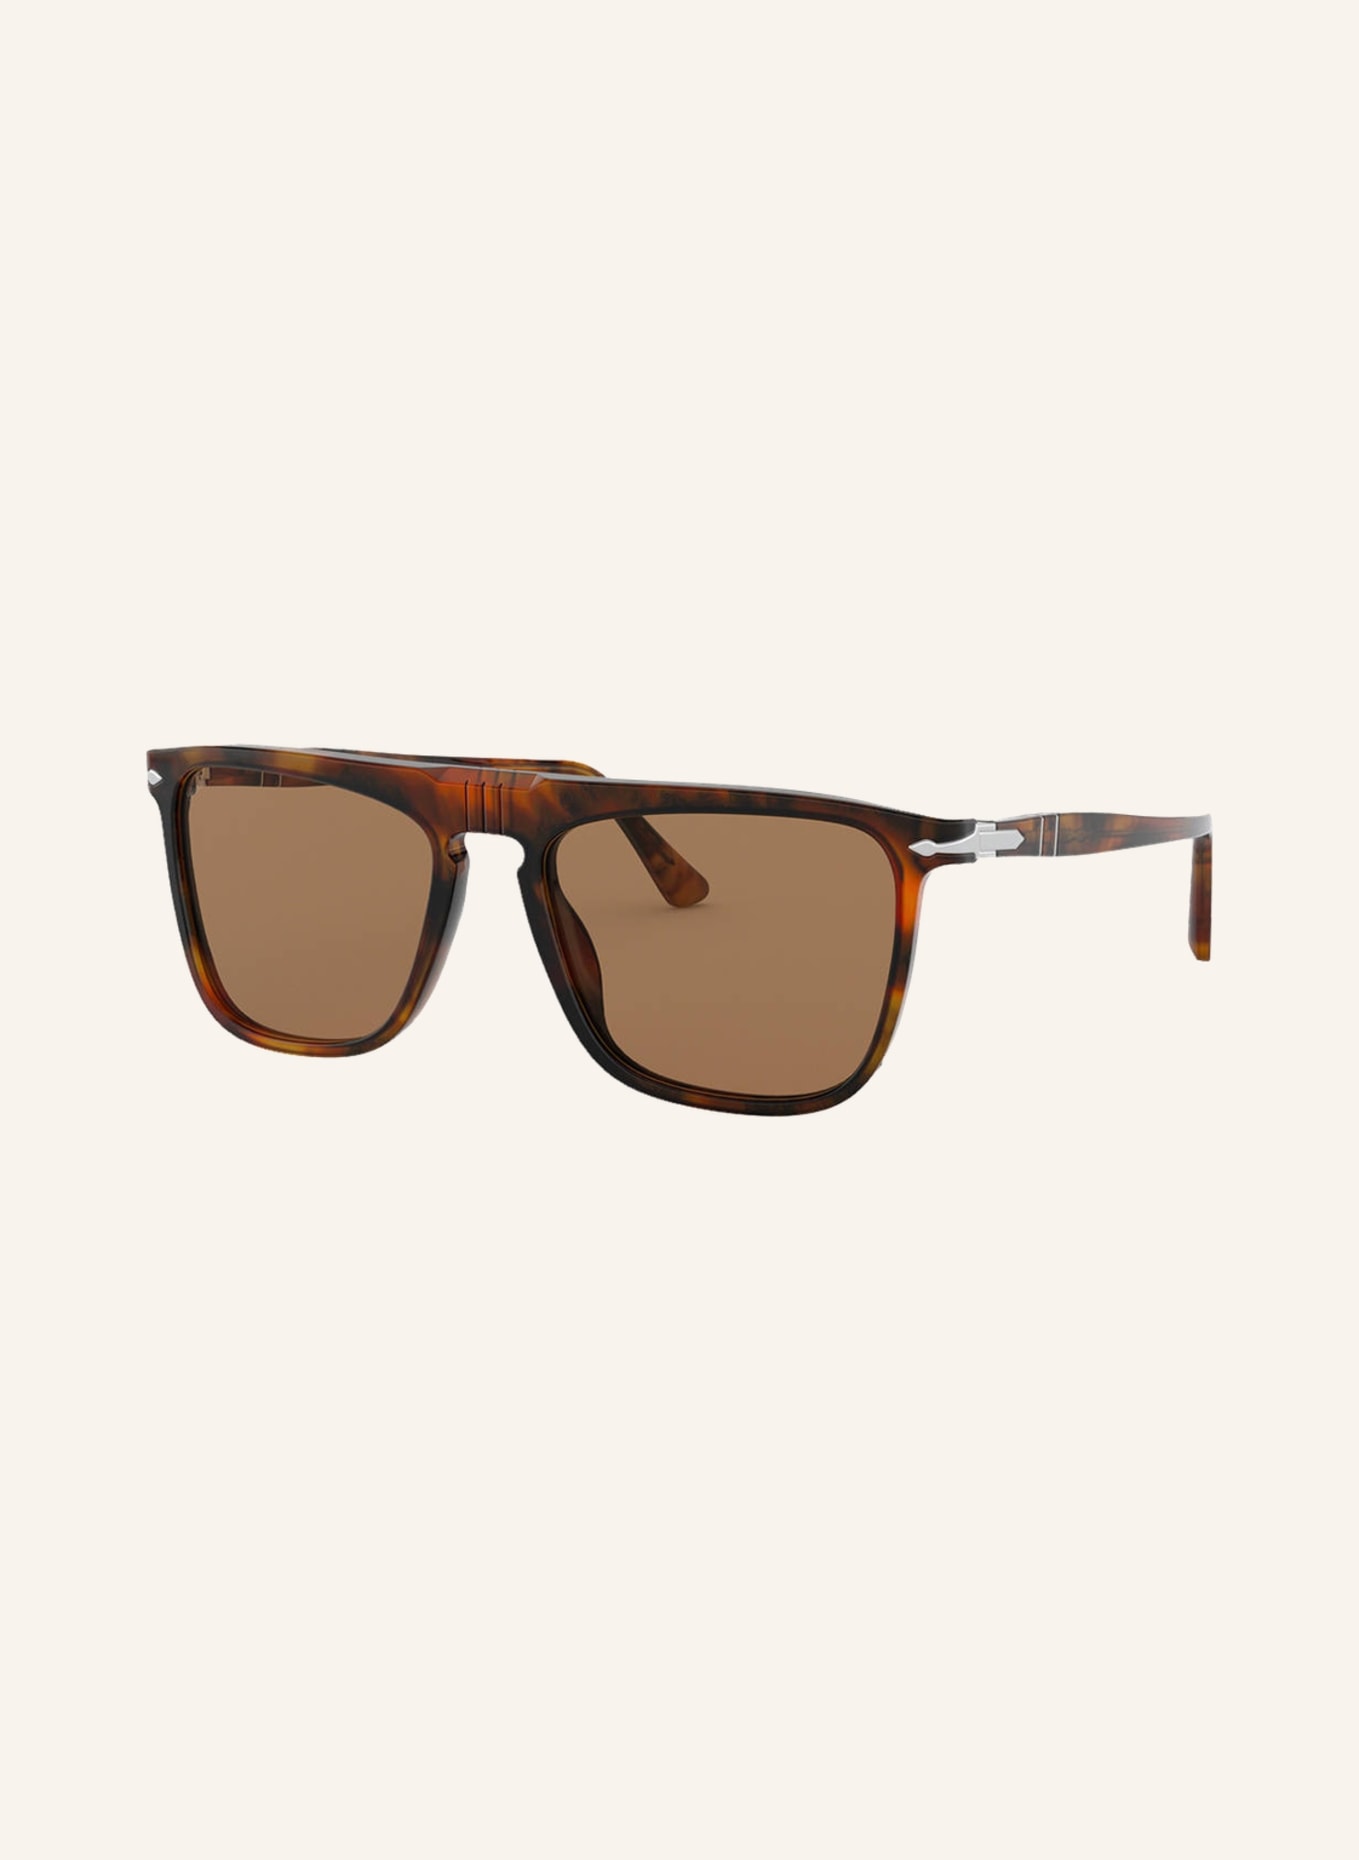 Persol Sunglasses PO3225S, Color: 108/53 - HAVANA/ BROWN (Image 1)